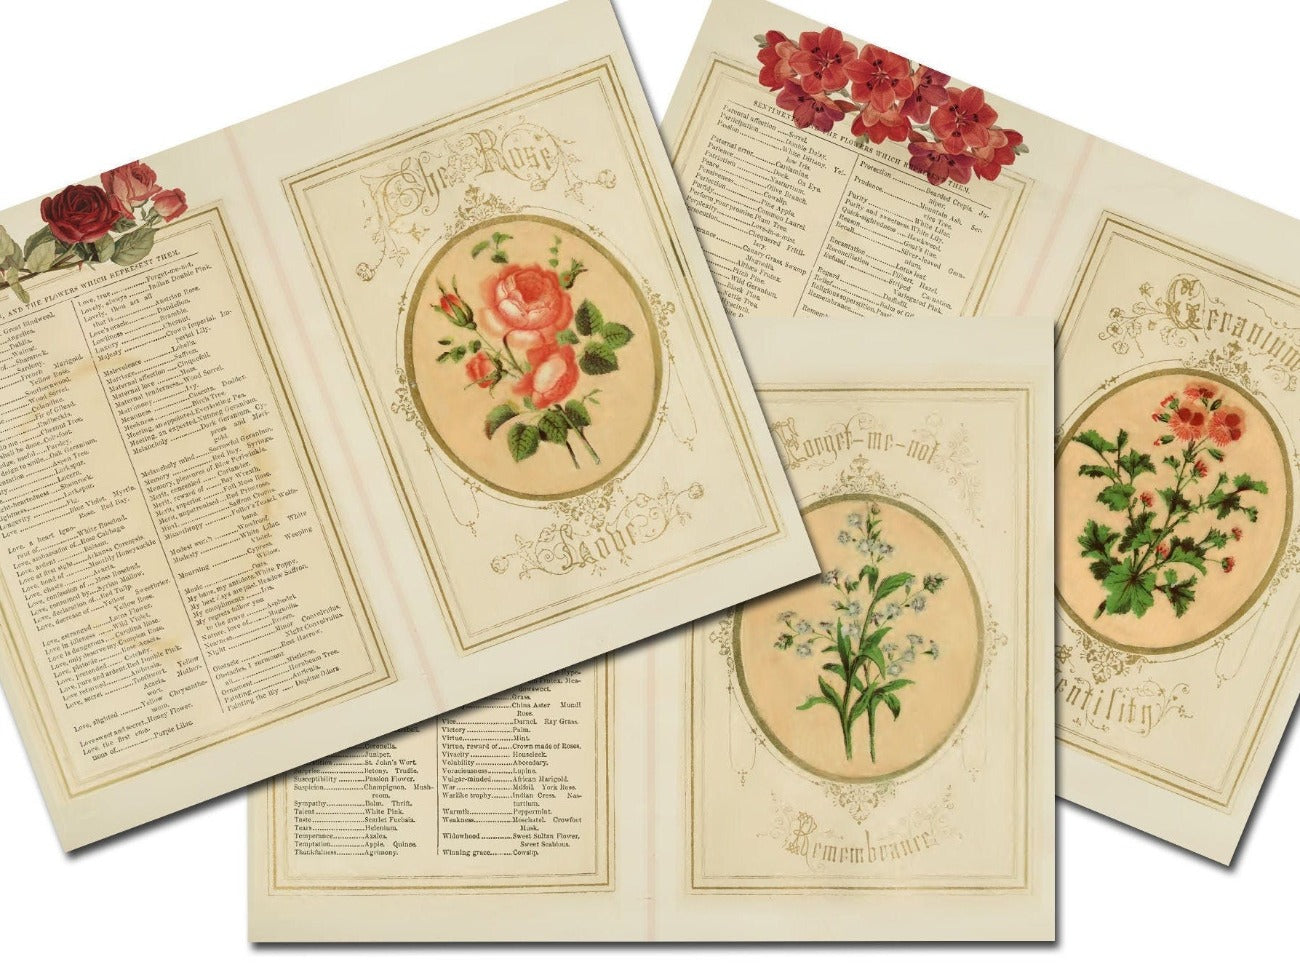 LANGUAGE of FLOWERS, Junk Journal Kit, 10 Printable Pages, Vintage Floral Art, Romantic Floral Messages, Antique Grimoire, Secret Admirer - Morgana Magick Spell